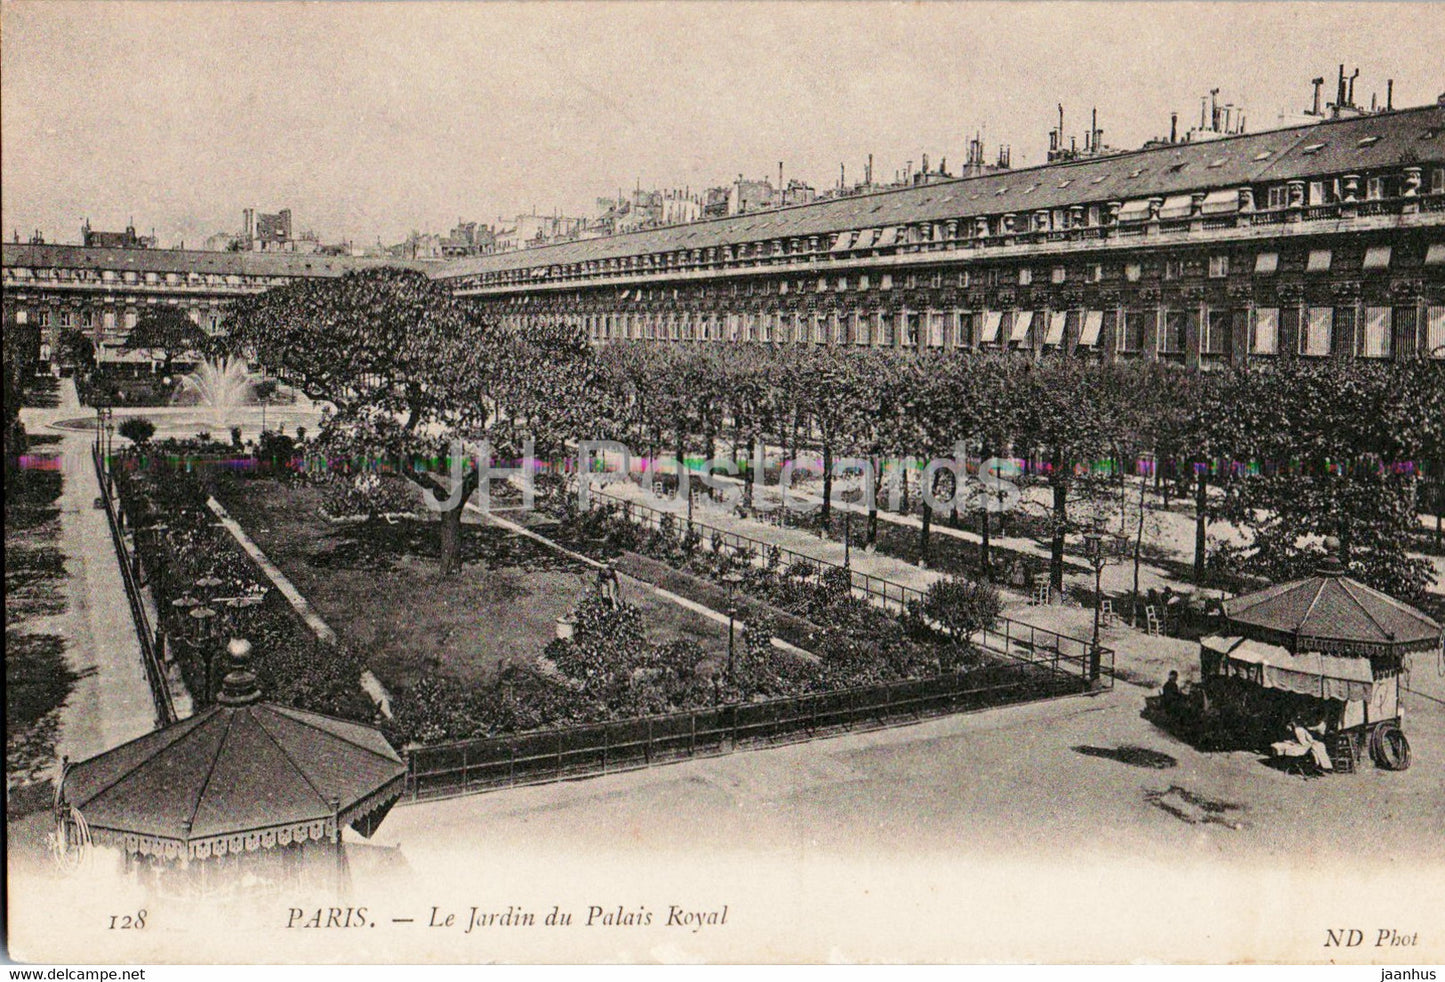 Paris - Le Jardin du Palais Royal - 128 - old postcard - France - unused - JH Postcards